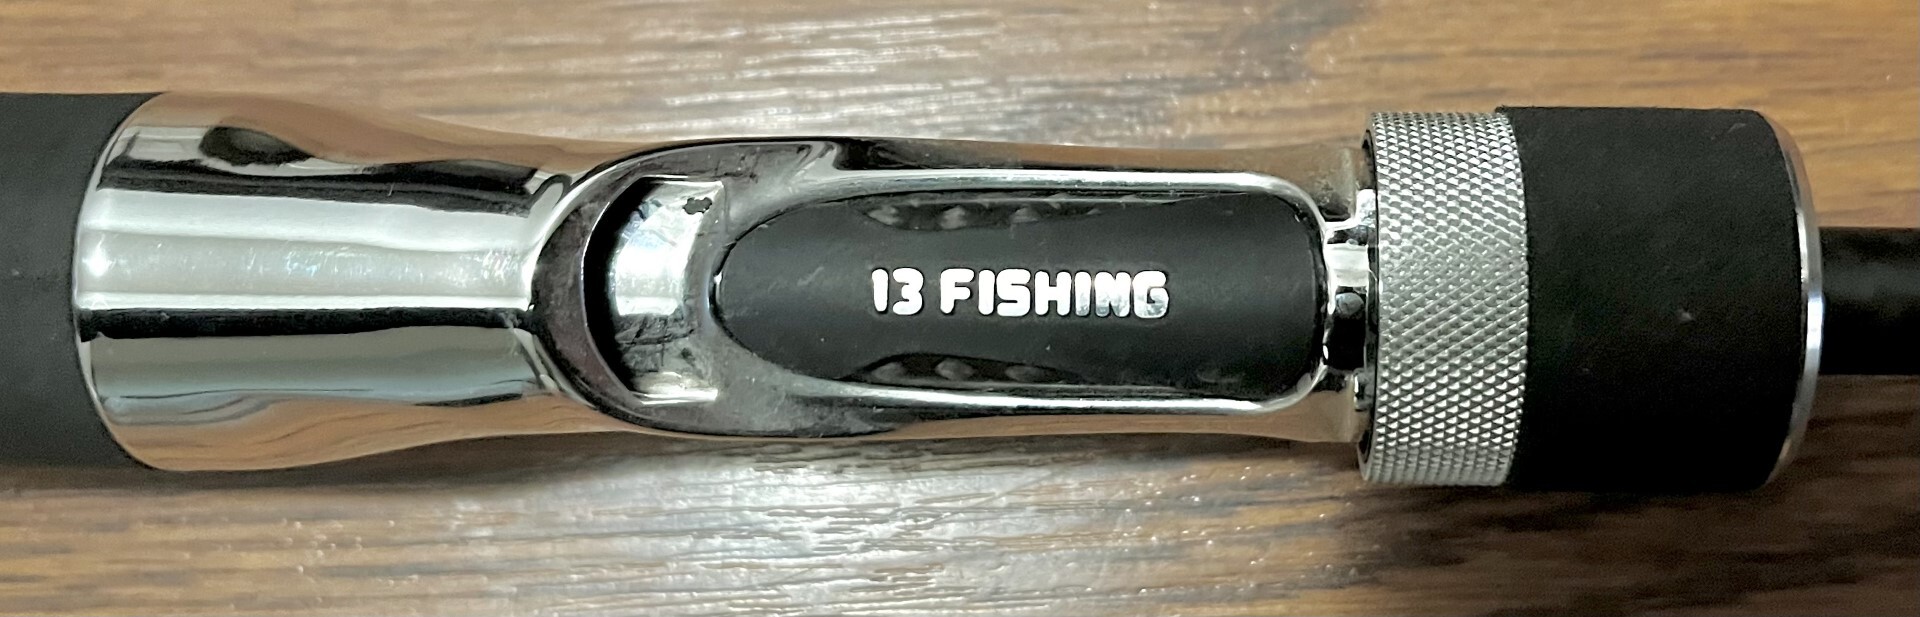 01-Pre-Owned 13 Fishing Envy Black EB2C610M Casting